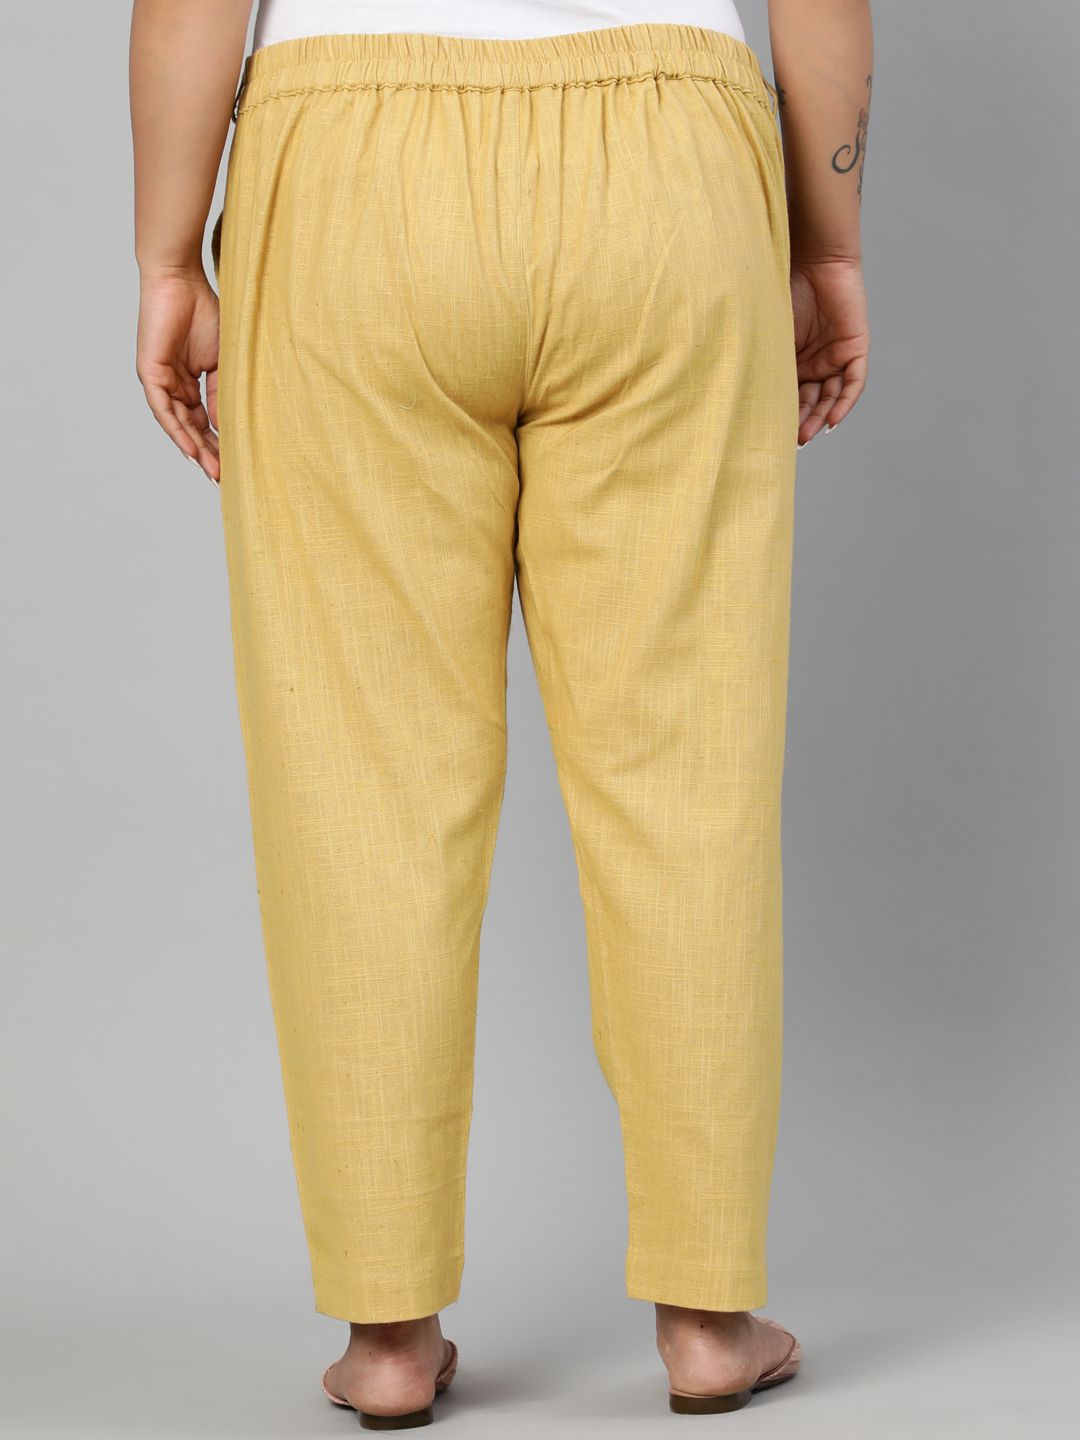 Shop Ladies cotton pants for kurti